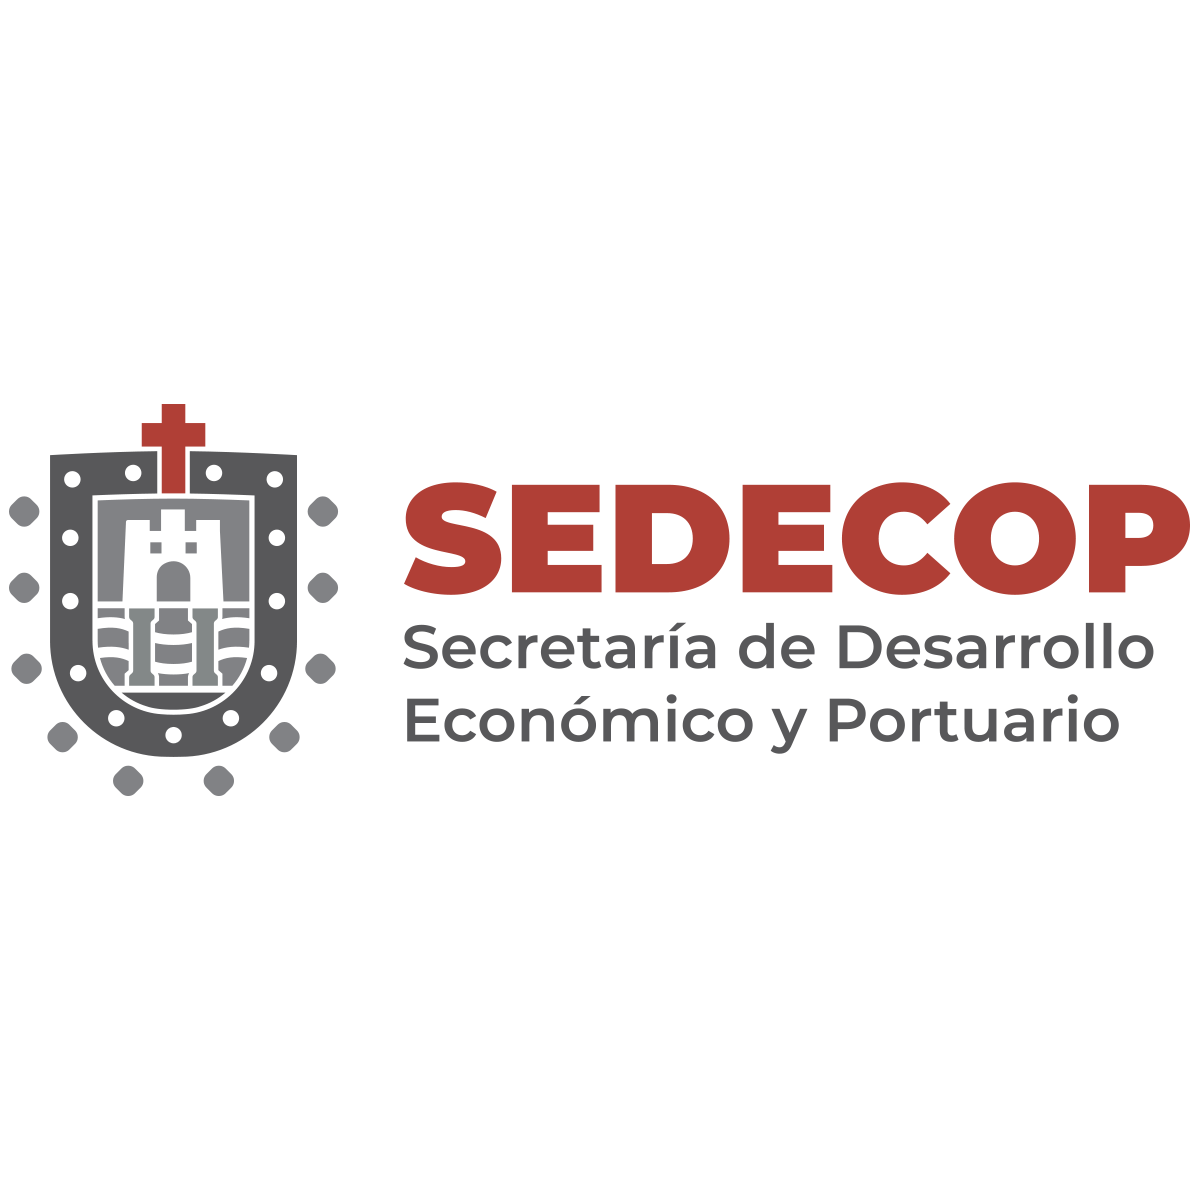 SEDECOP - Secretaría de Desarrollo Económico y Portuario